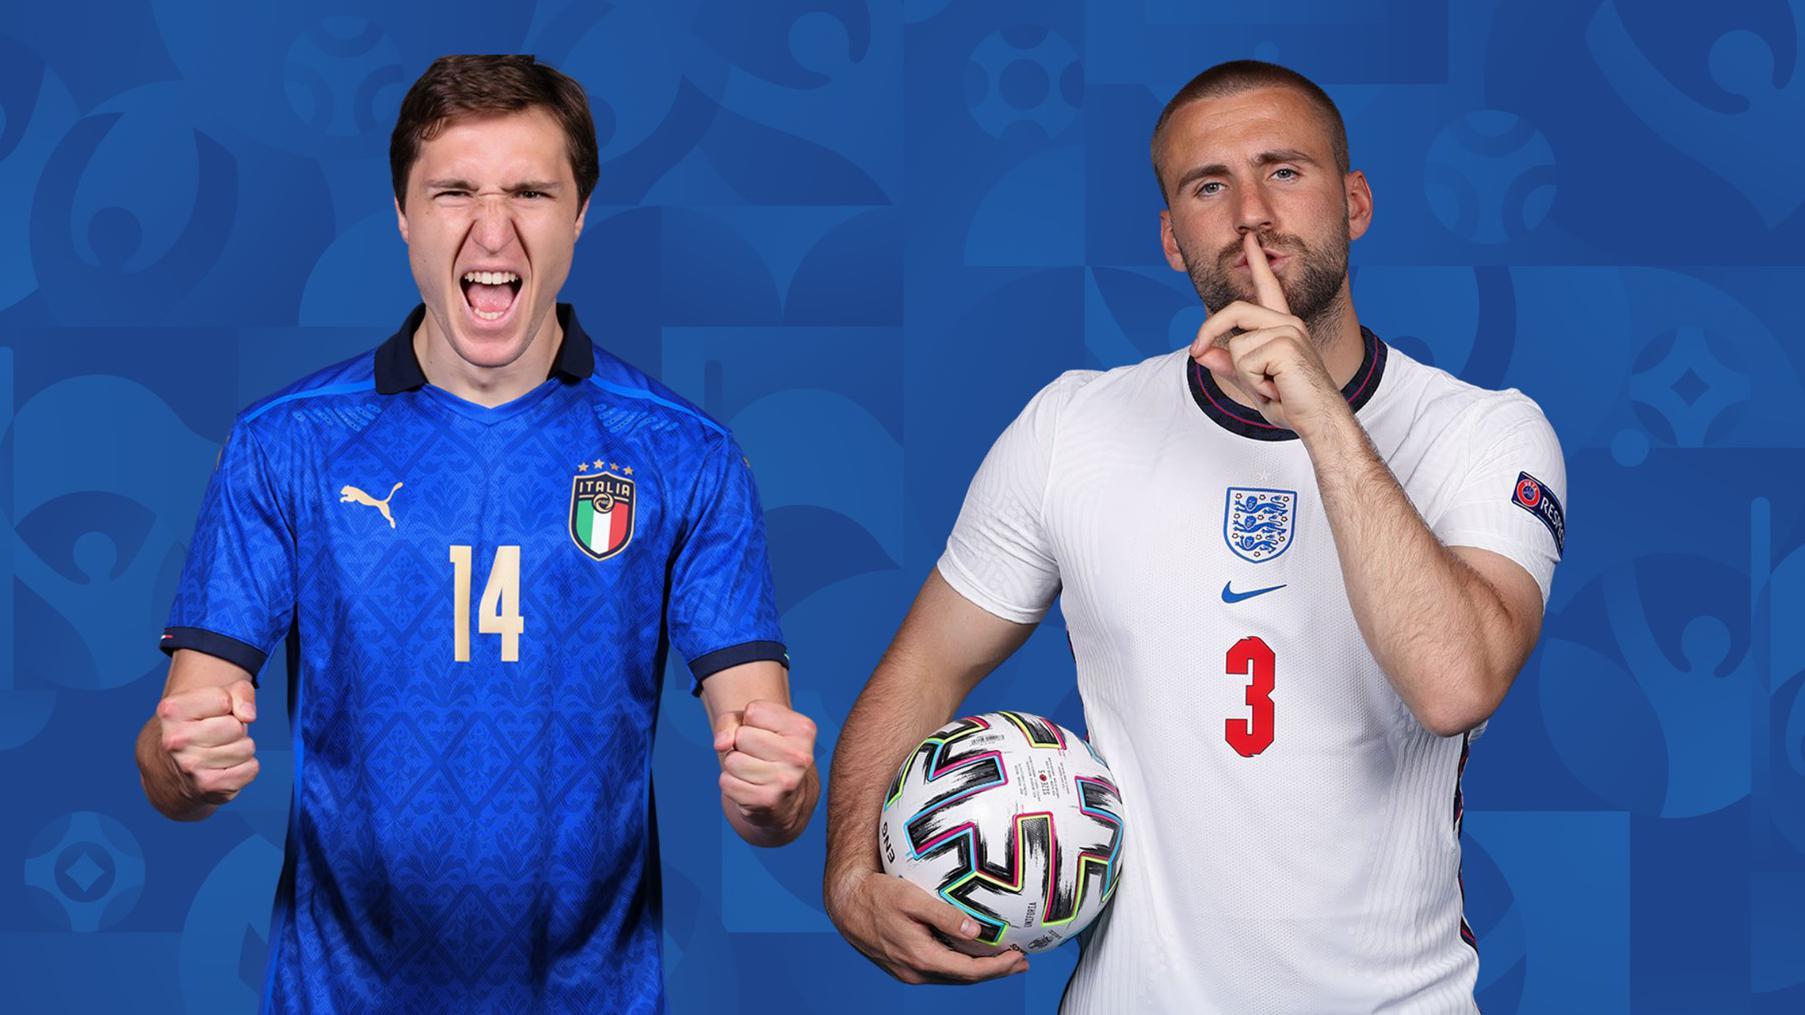 Italy vs Anh: 4 điểm nóng quyết định chung kết EURO 2020